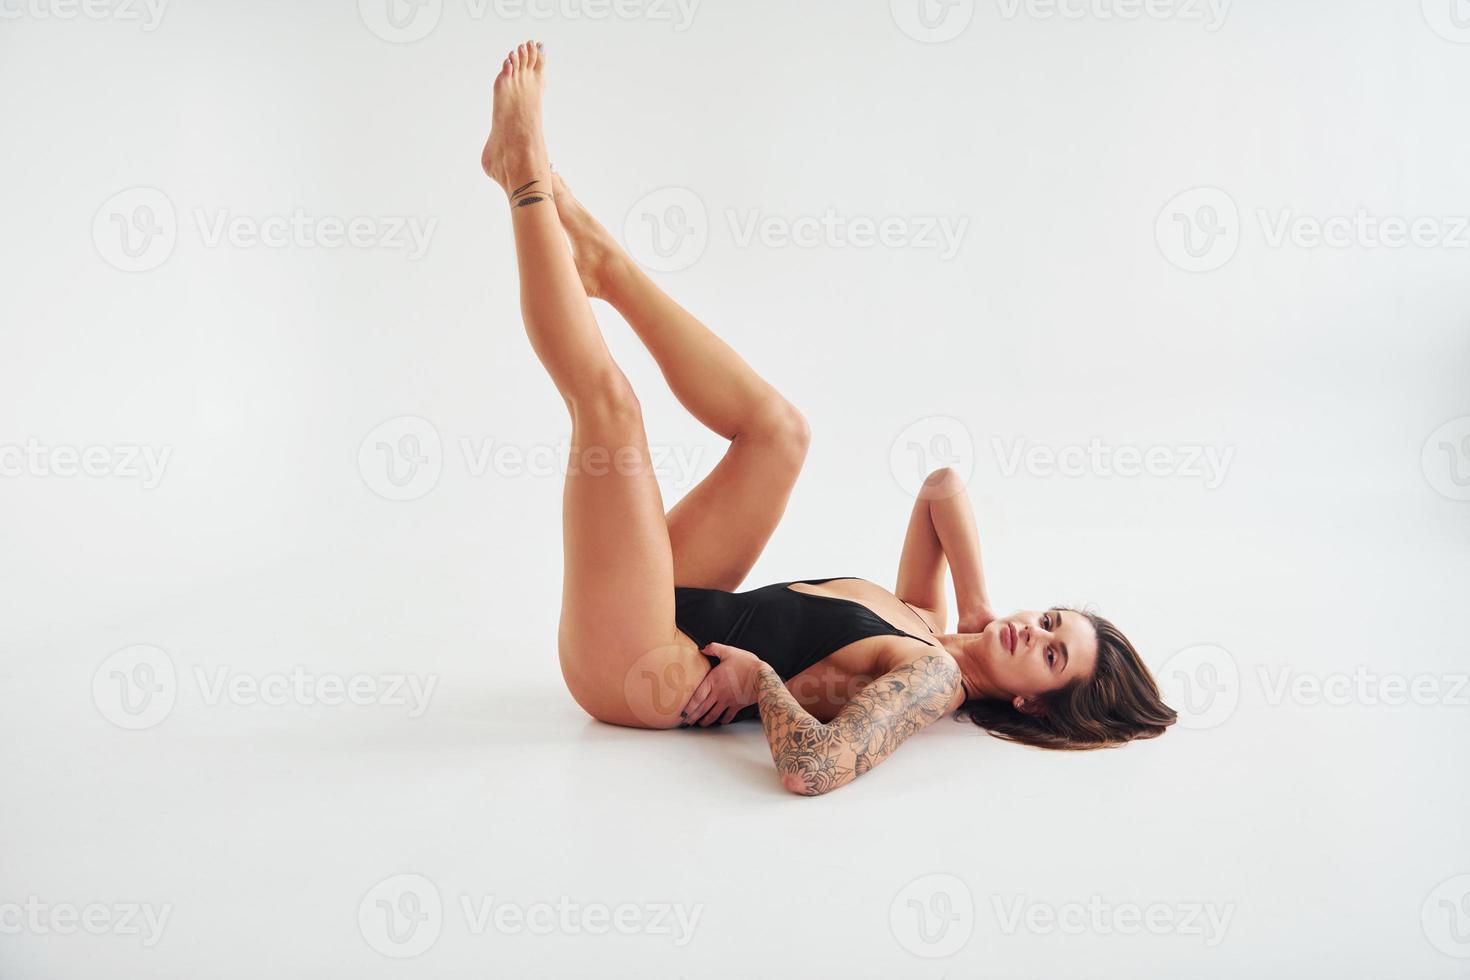 aan het liegen naar beneden Aan de grond. mooi verleidelijk sportief vrouw met sexy lichaam is poseren in de studio foto